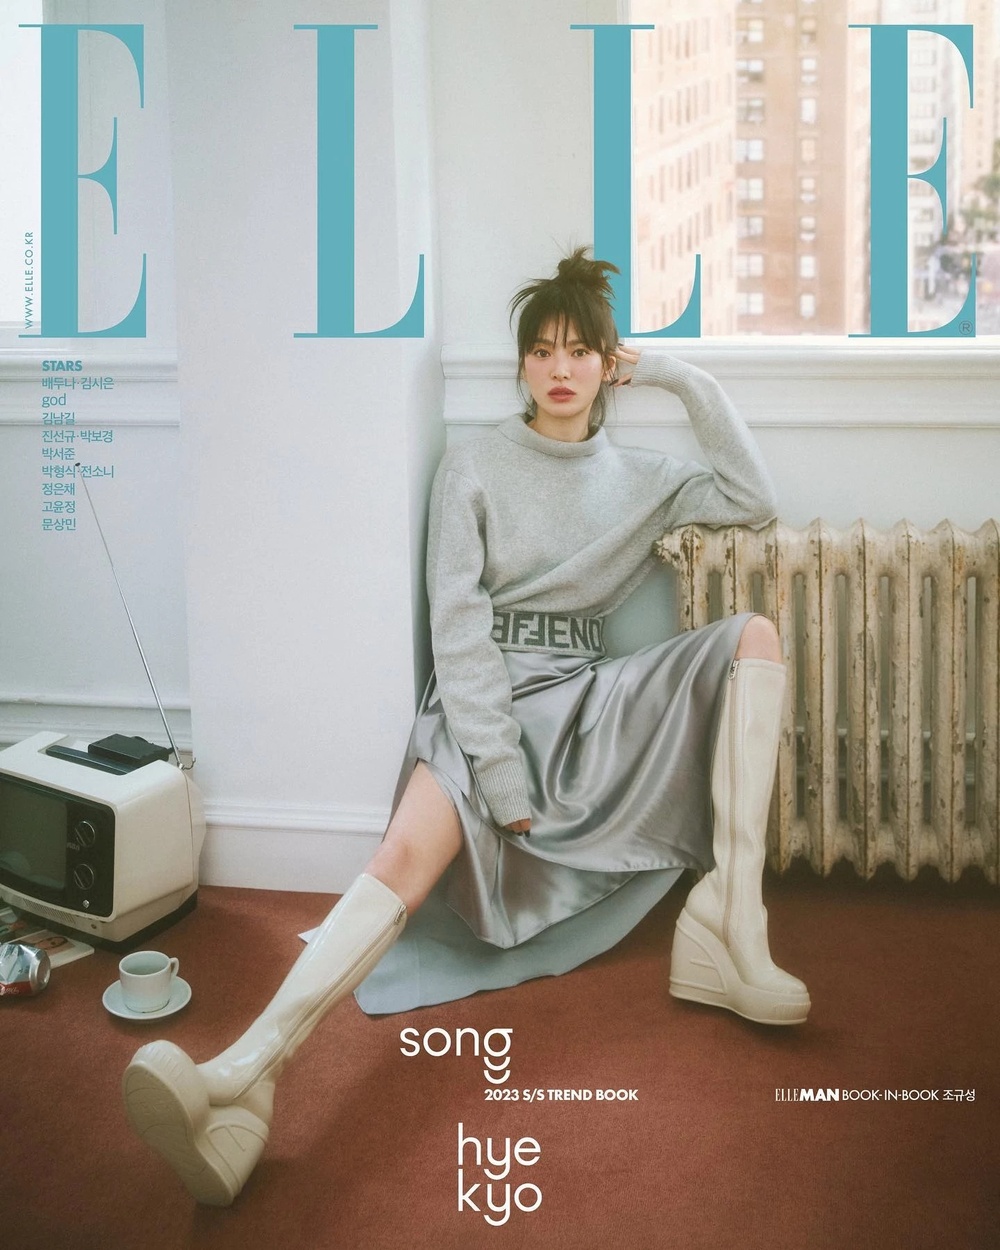 Song Hye Kyo dội bom loạt ảnh tạp chí mới đáp lại ồn ào lão hoá: Nhan sắc xứng tầm định nghĩa cho cụm sốc visual!  - Ảnh 3.